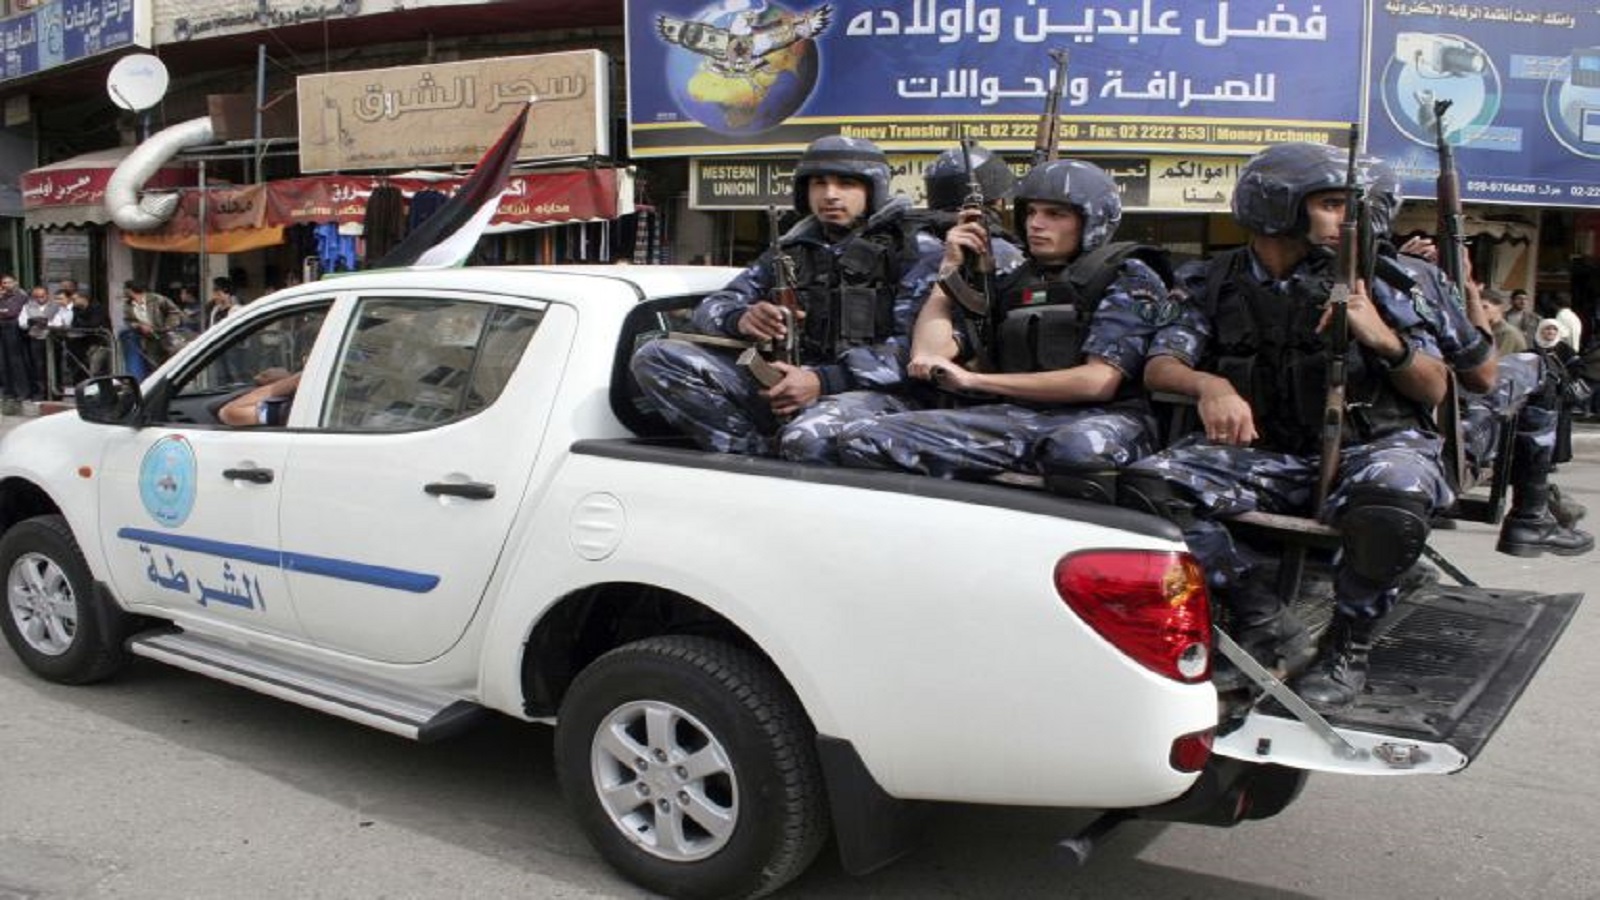 التنسيق الامني مستمر:فلسطينية مُعتقلة بتهمة العمل ل"داعش"